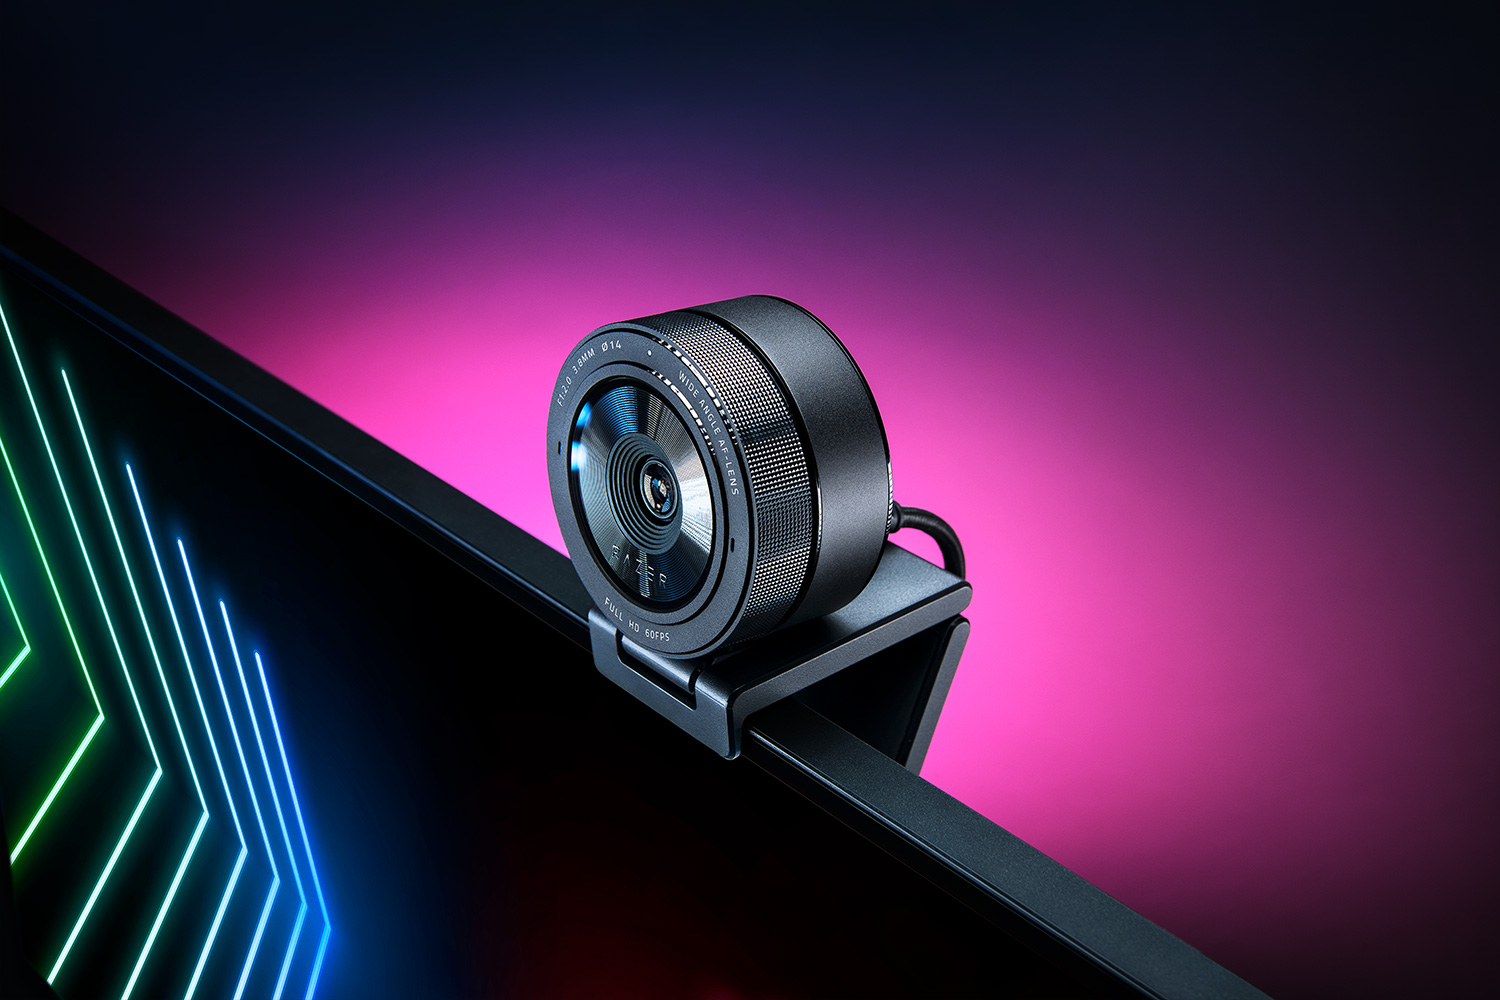 Razer、自然な明るさに自動調整できる1080p/60fpsおよび30fps/HDR対応のWebカメラ「Kiyo Pro」発表